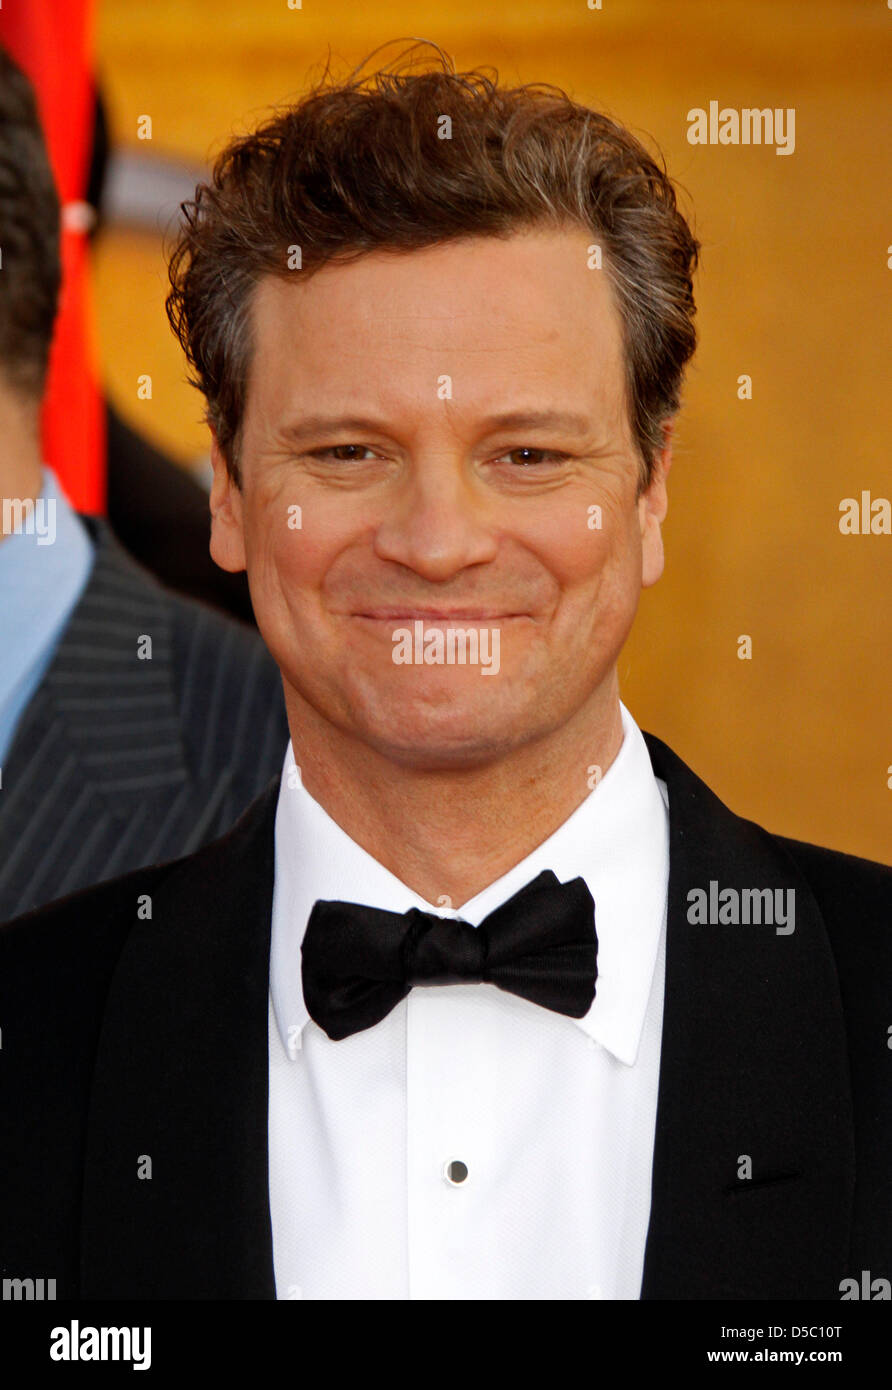 Englischer Schauspieler Colin Firth besucht die 16. jährlichen Screen Actor Guild (SAG) Awards im Shrine Auditorium in Los Angeles, Kalifornien, USA, 23. Januar 2010. Der Screen Actors Guild ehrt Spitzenleistungen in fünf Film- und acht Primetime-TV-Kategorien. Foto: Hubert Boesl Stockfoto